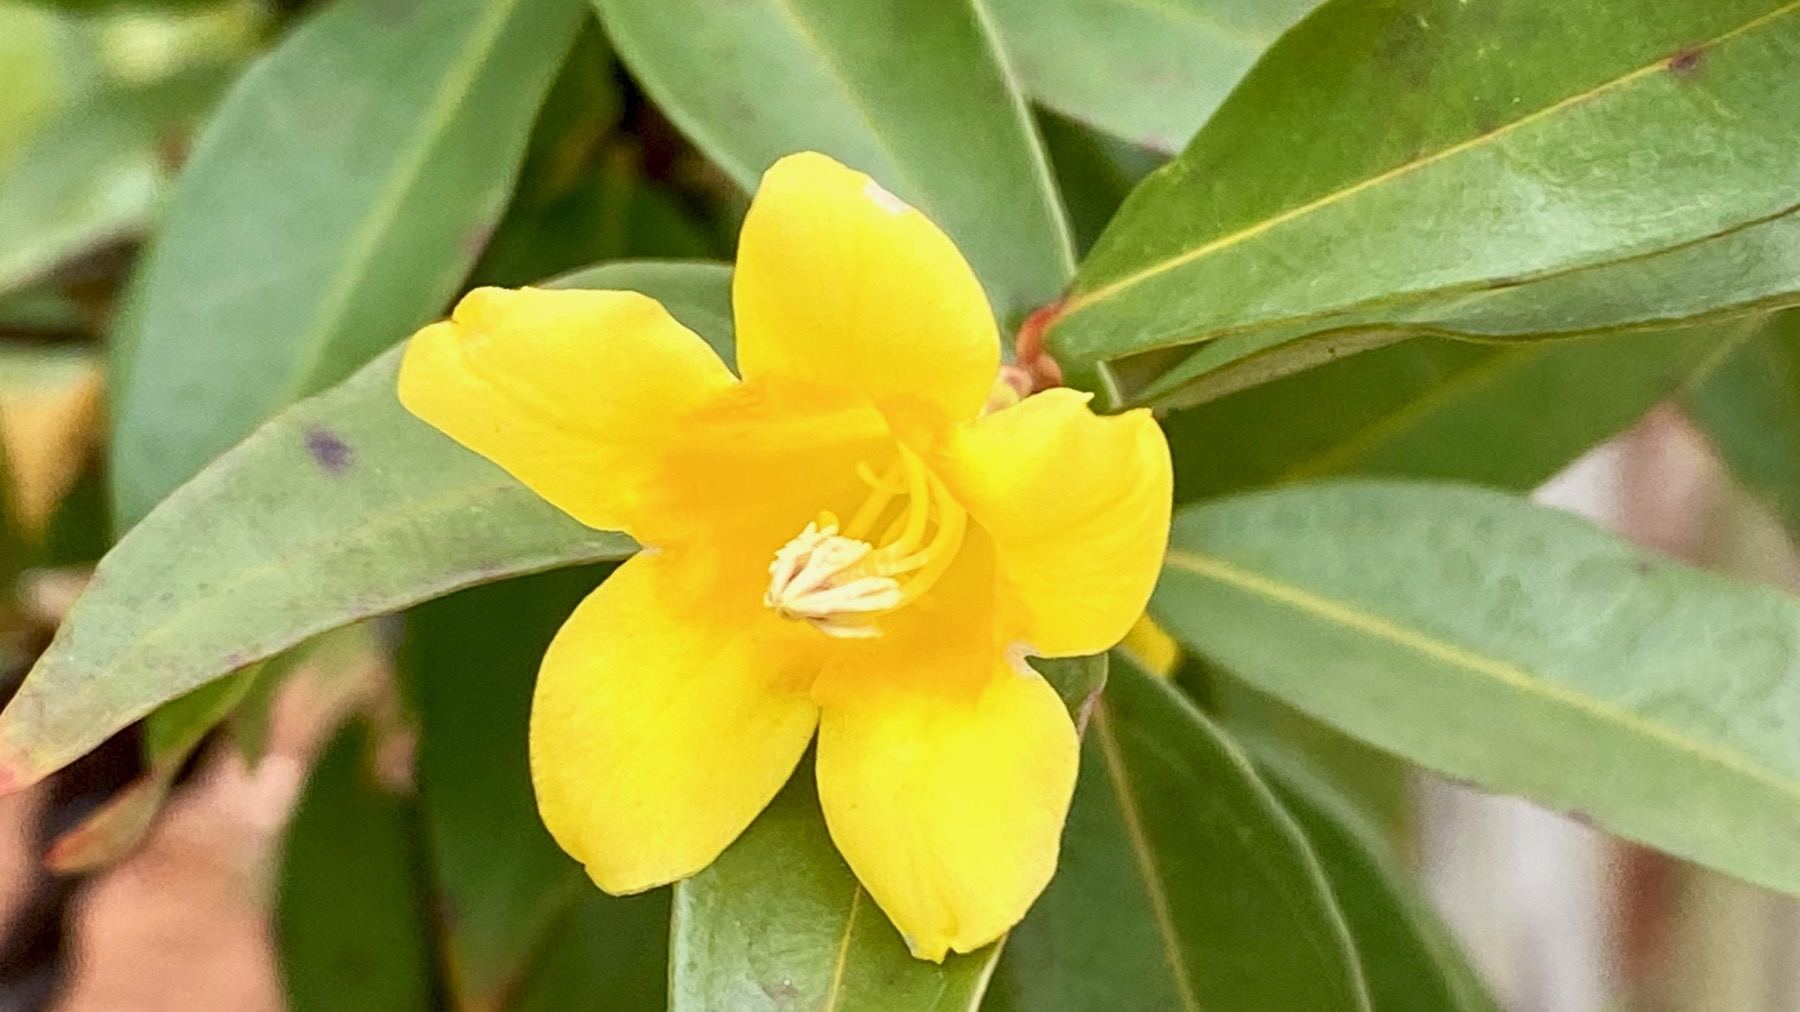 Yellow jasmine